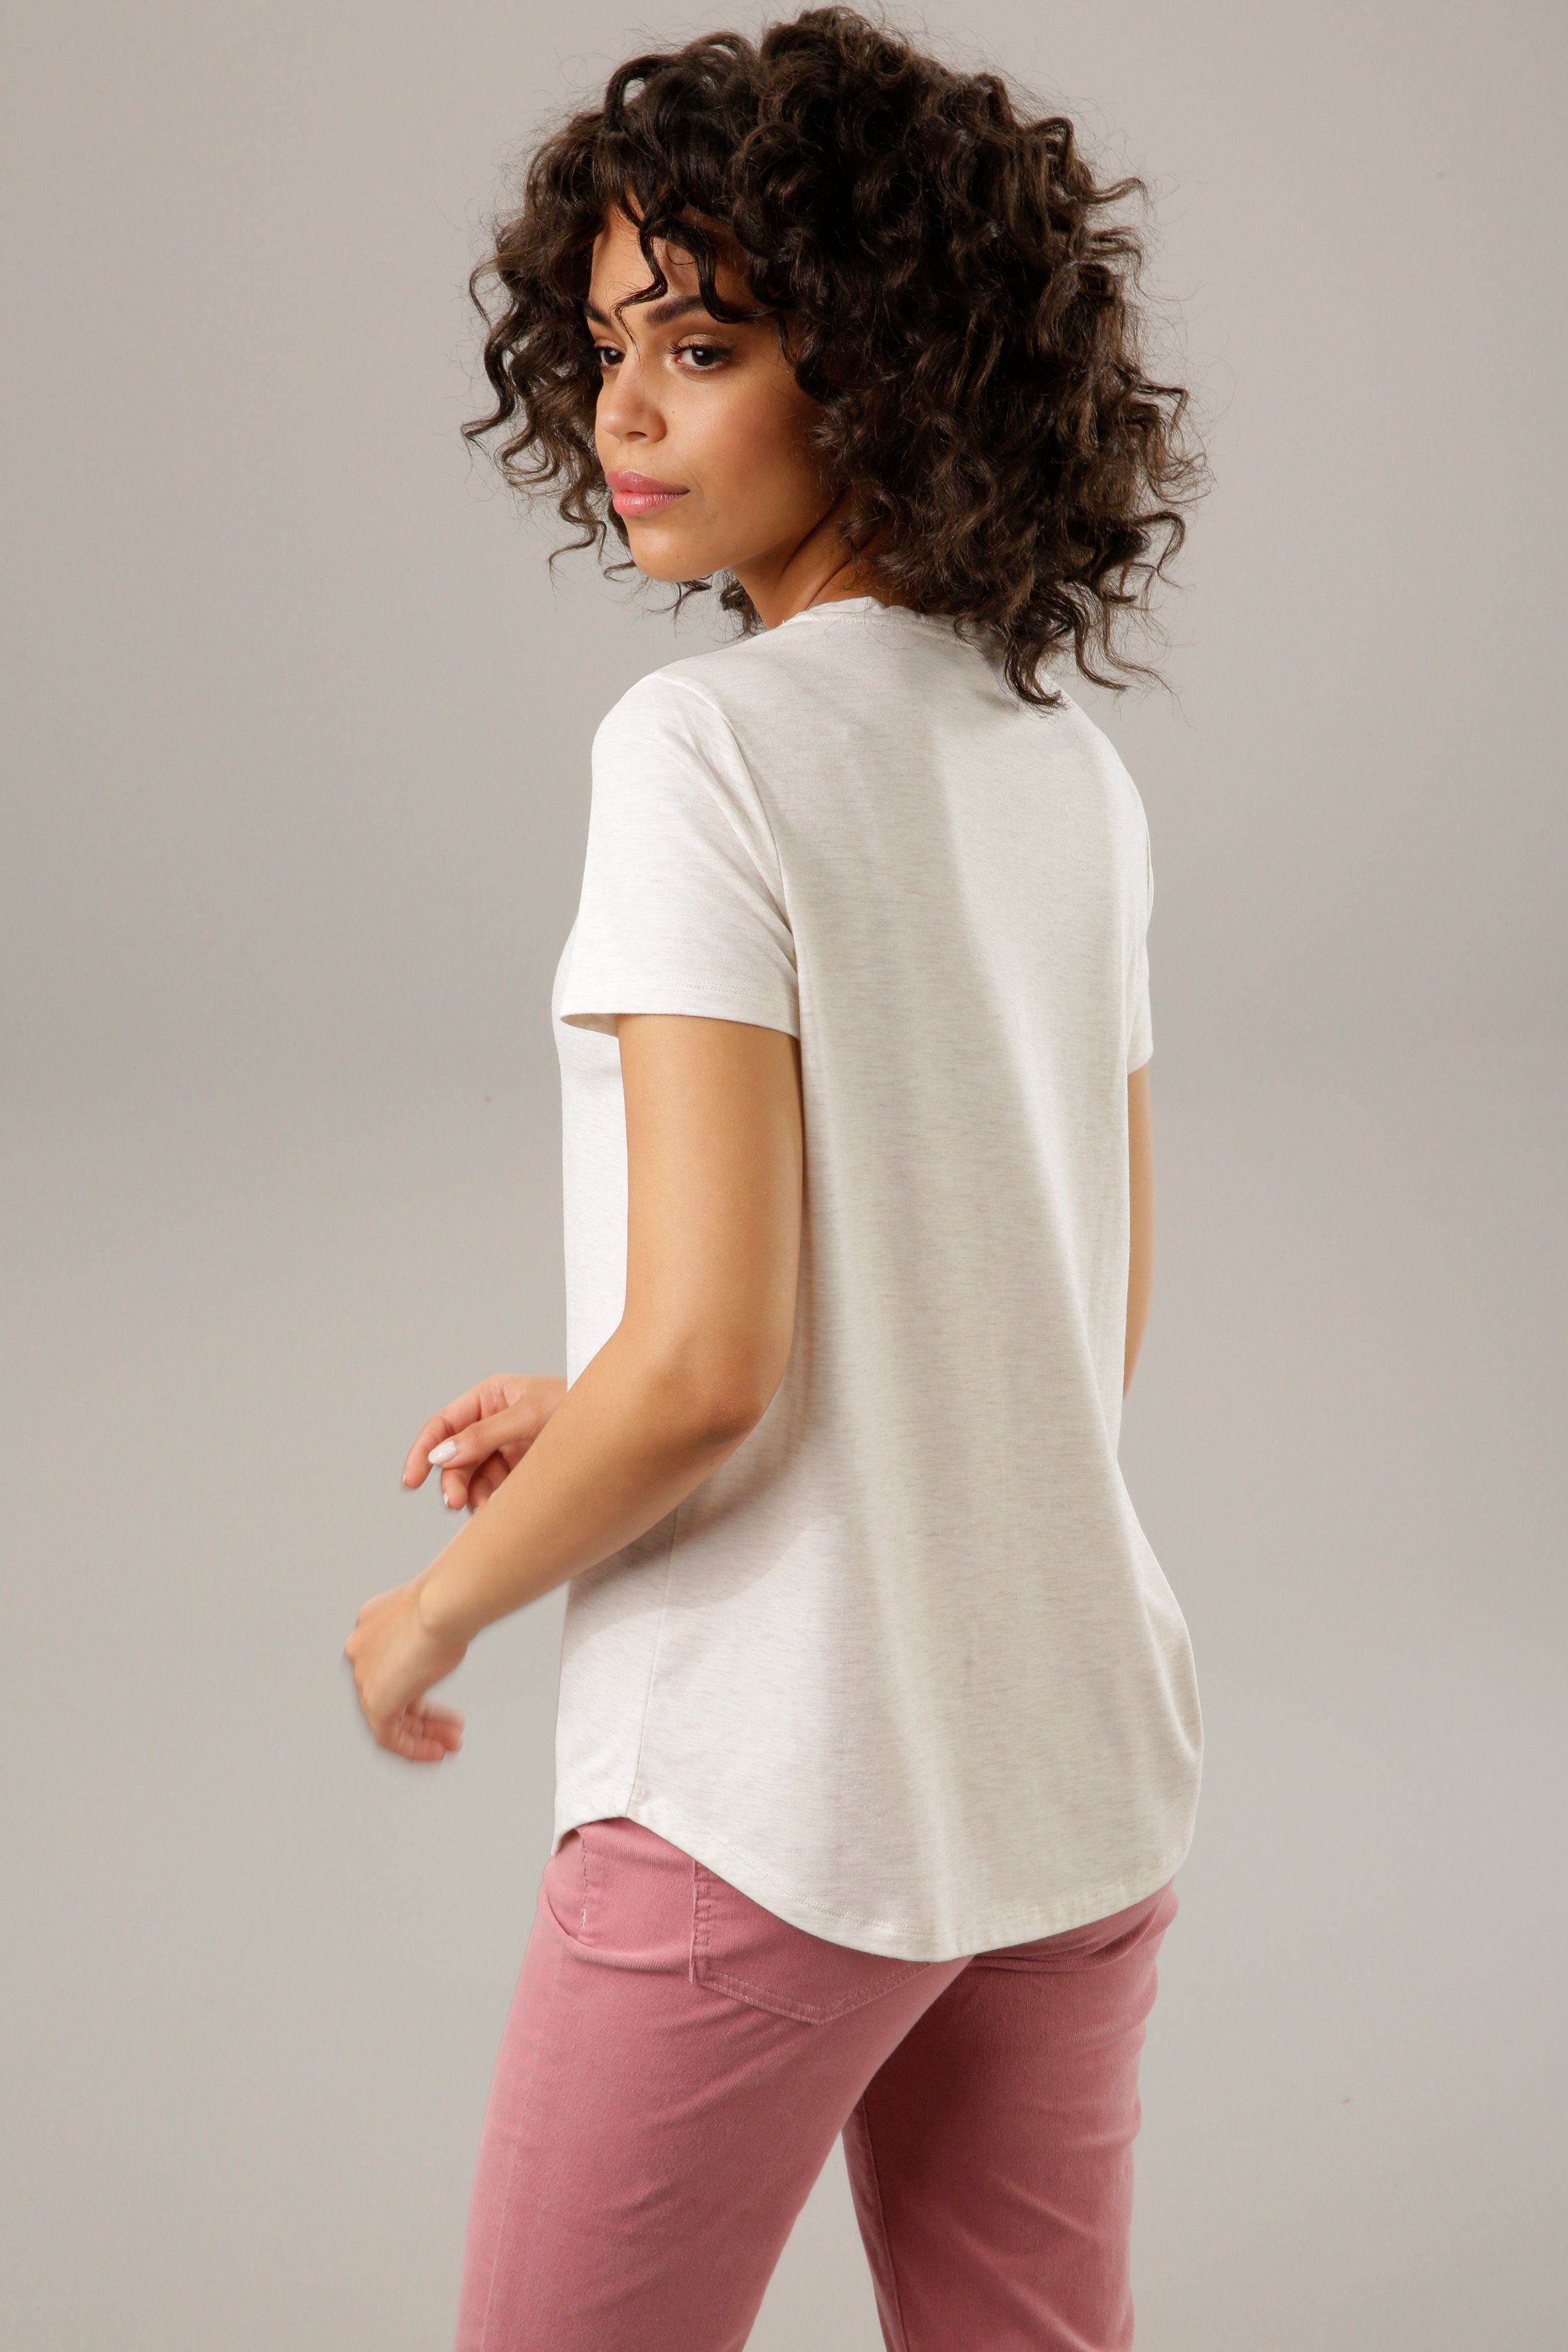 Glitzer mit verziertem CASUAL Frontdruck natur-dunkelbraun-weiß-rosa-goldfarben Aniston T-Shirt